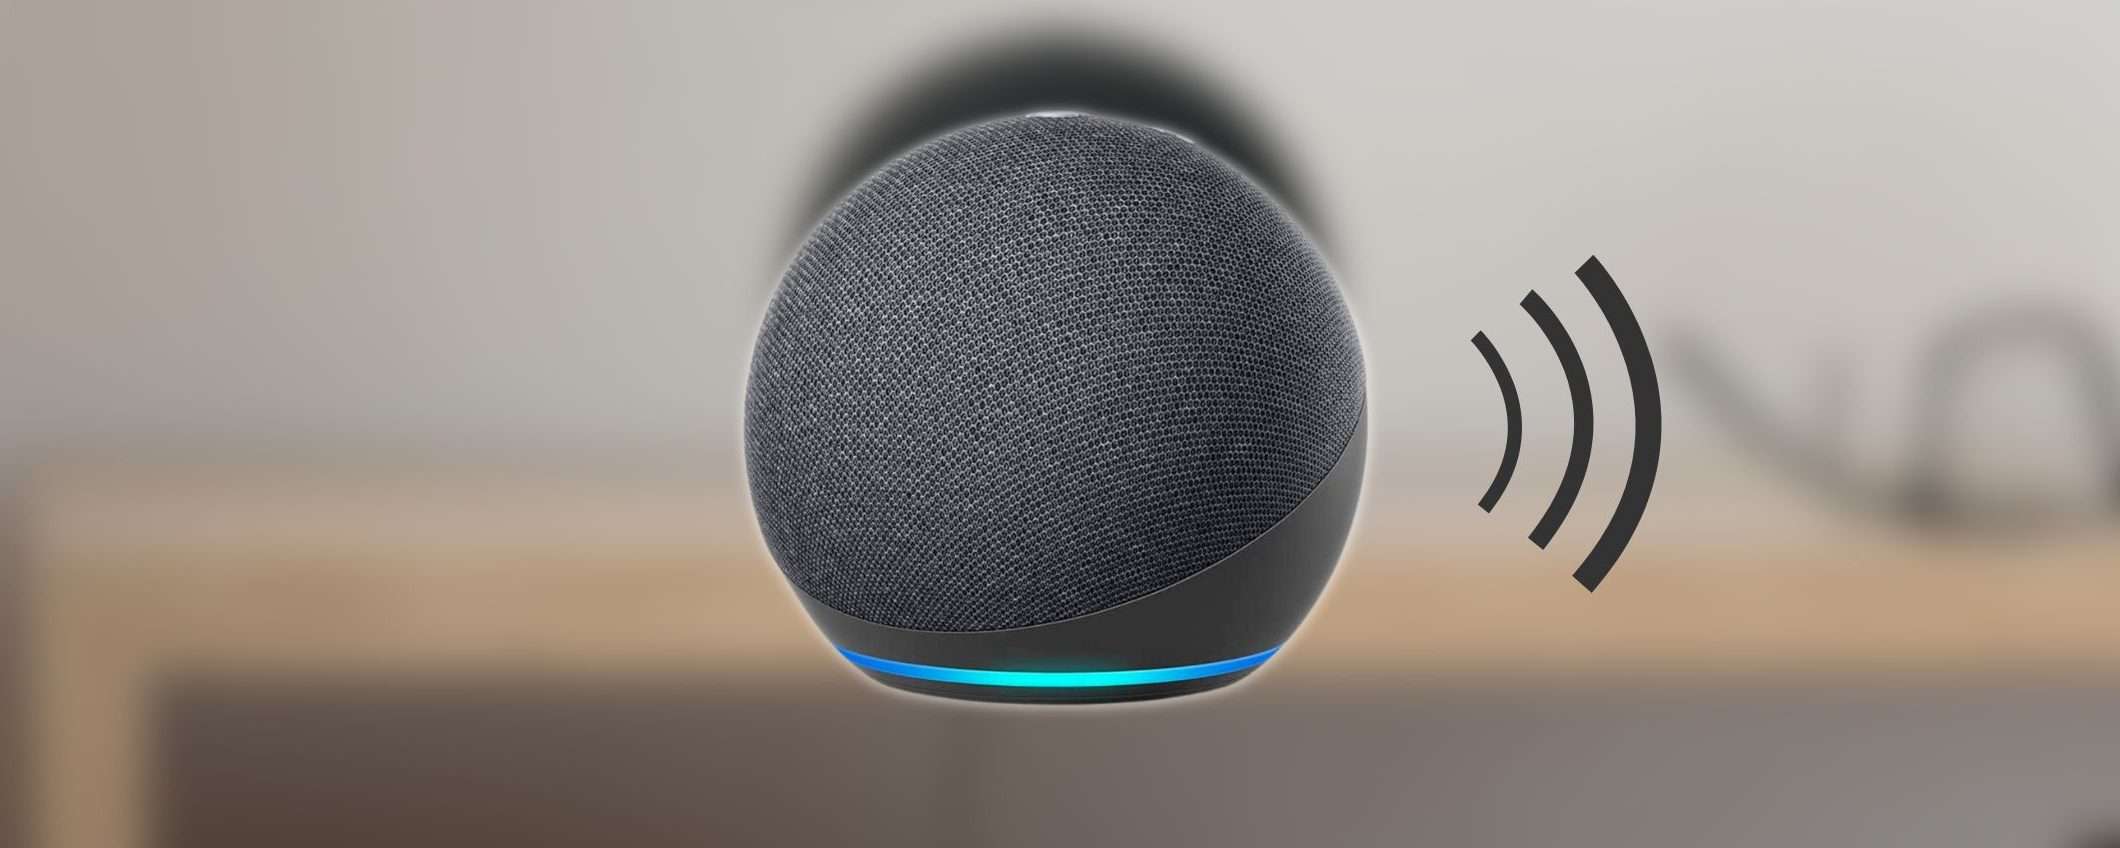 Echo Dot a 19 euro: Amazon è impazzita? Noi facciamo l'affare